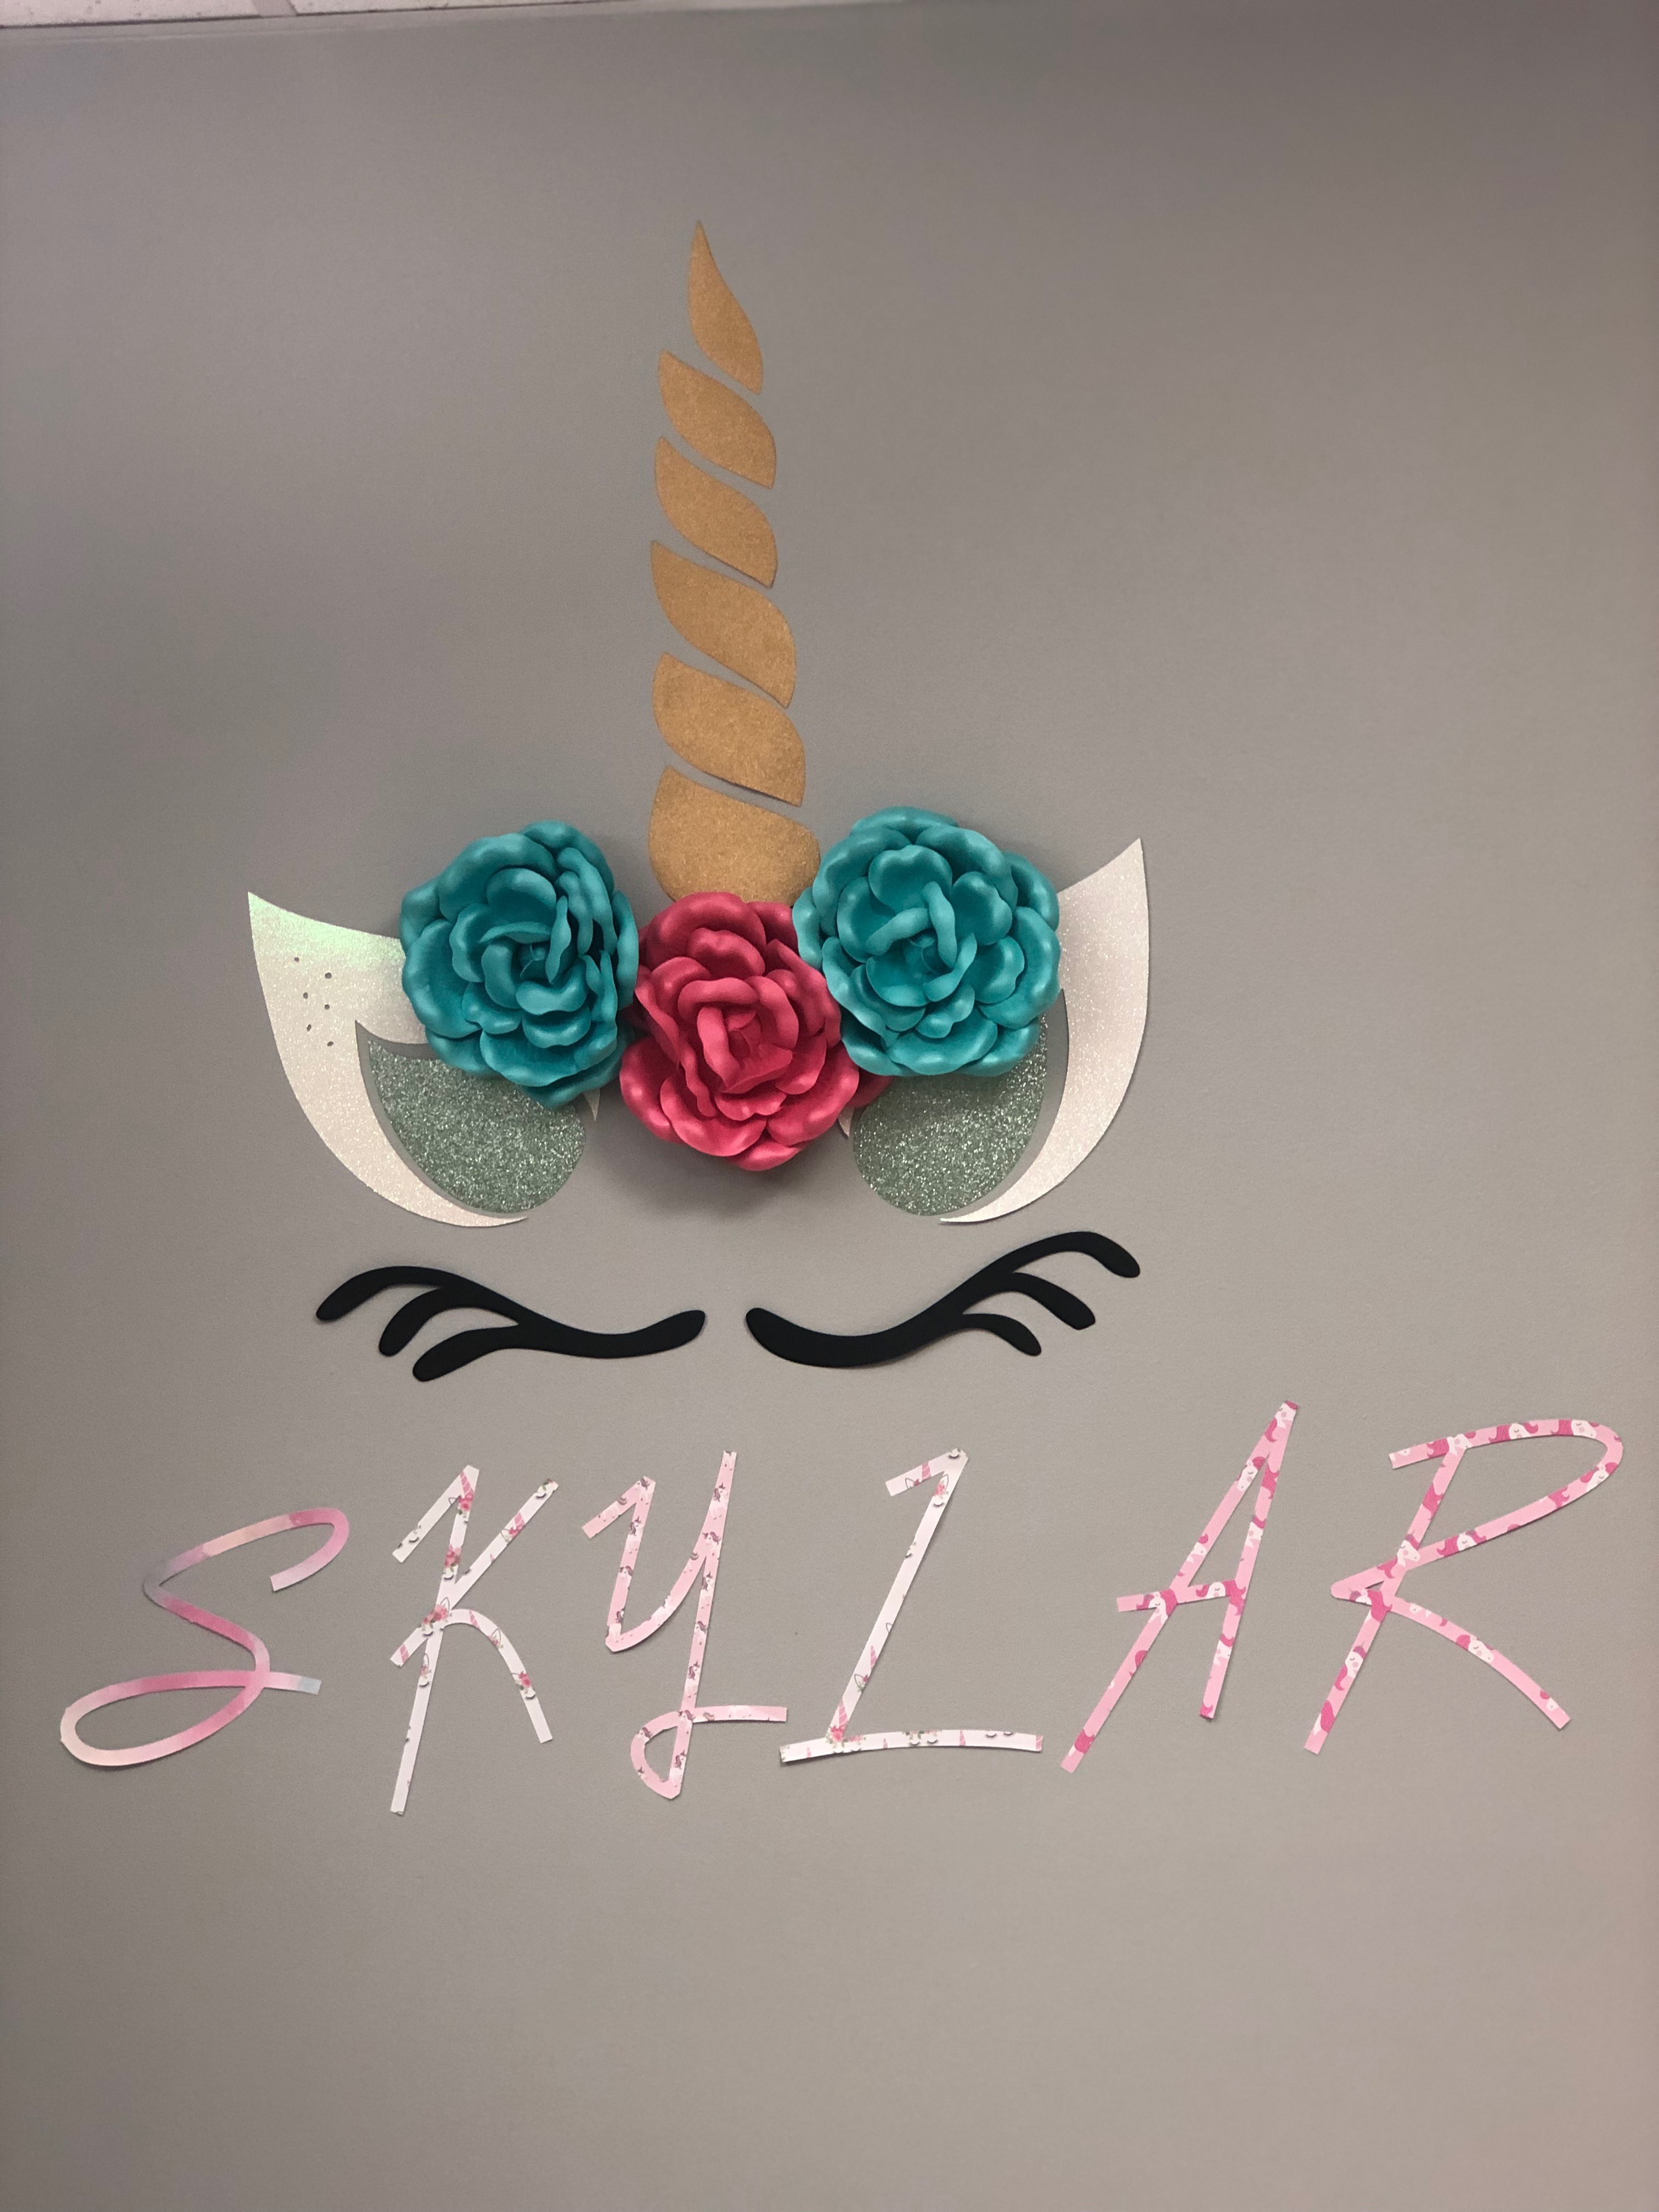 The name Skylar underneath an unicorn mask